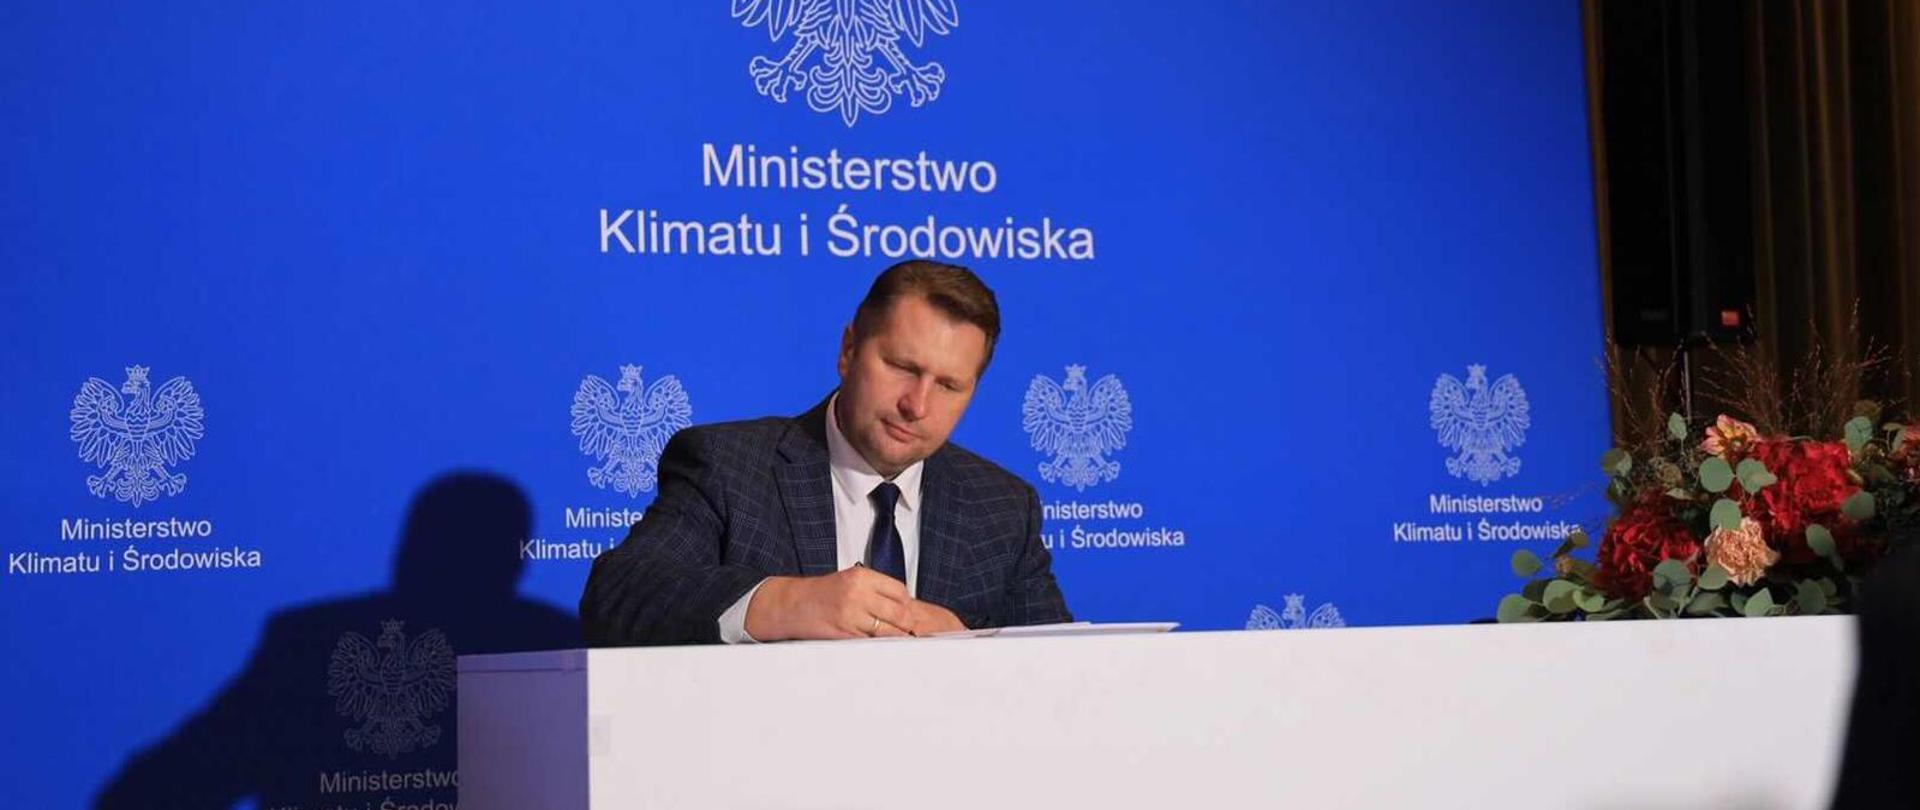 Minister Przemysław Czarnek podpisuje dokument siedząc przy białym stole. W tle niebieska ścianka z logo Ministerstwa Klimatu i Środowiska